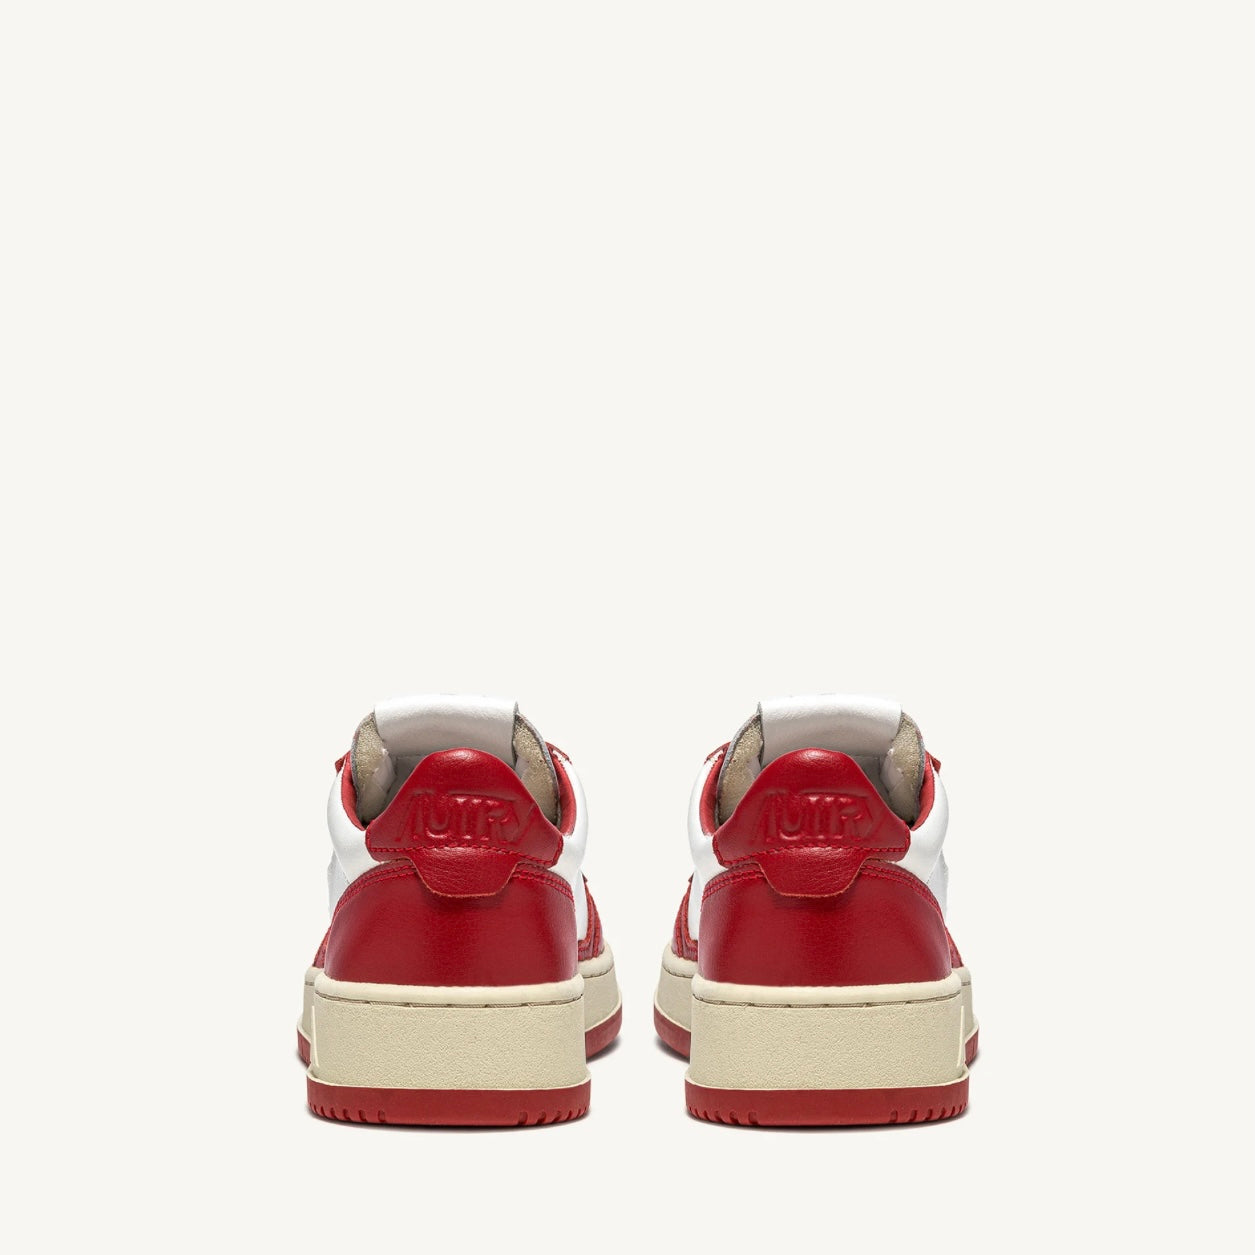  Autry Sneaker Bianca E Rosso Uomo - 3